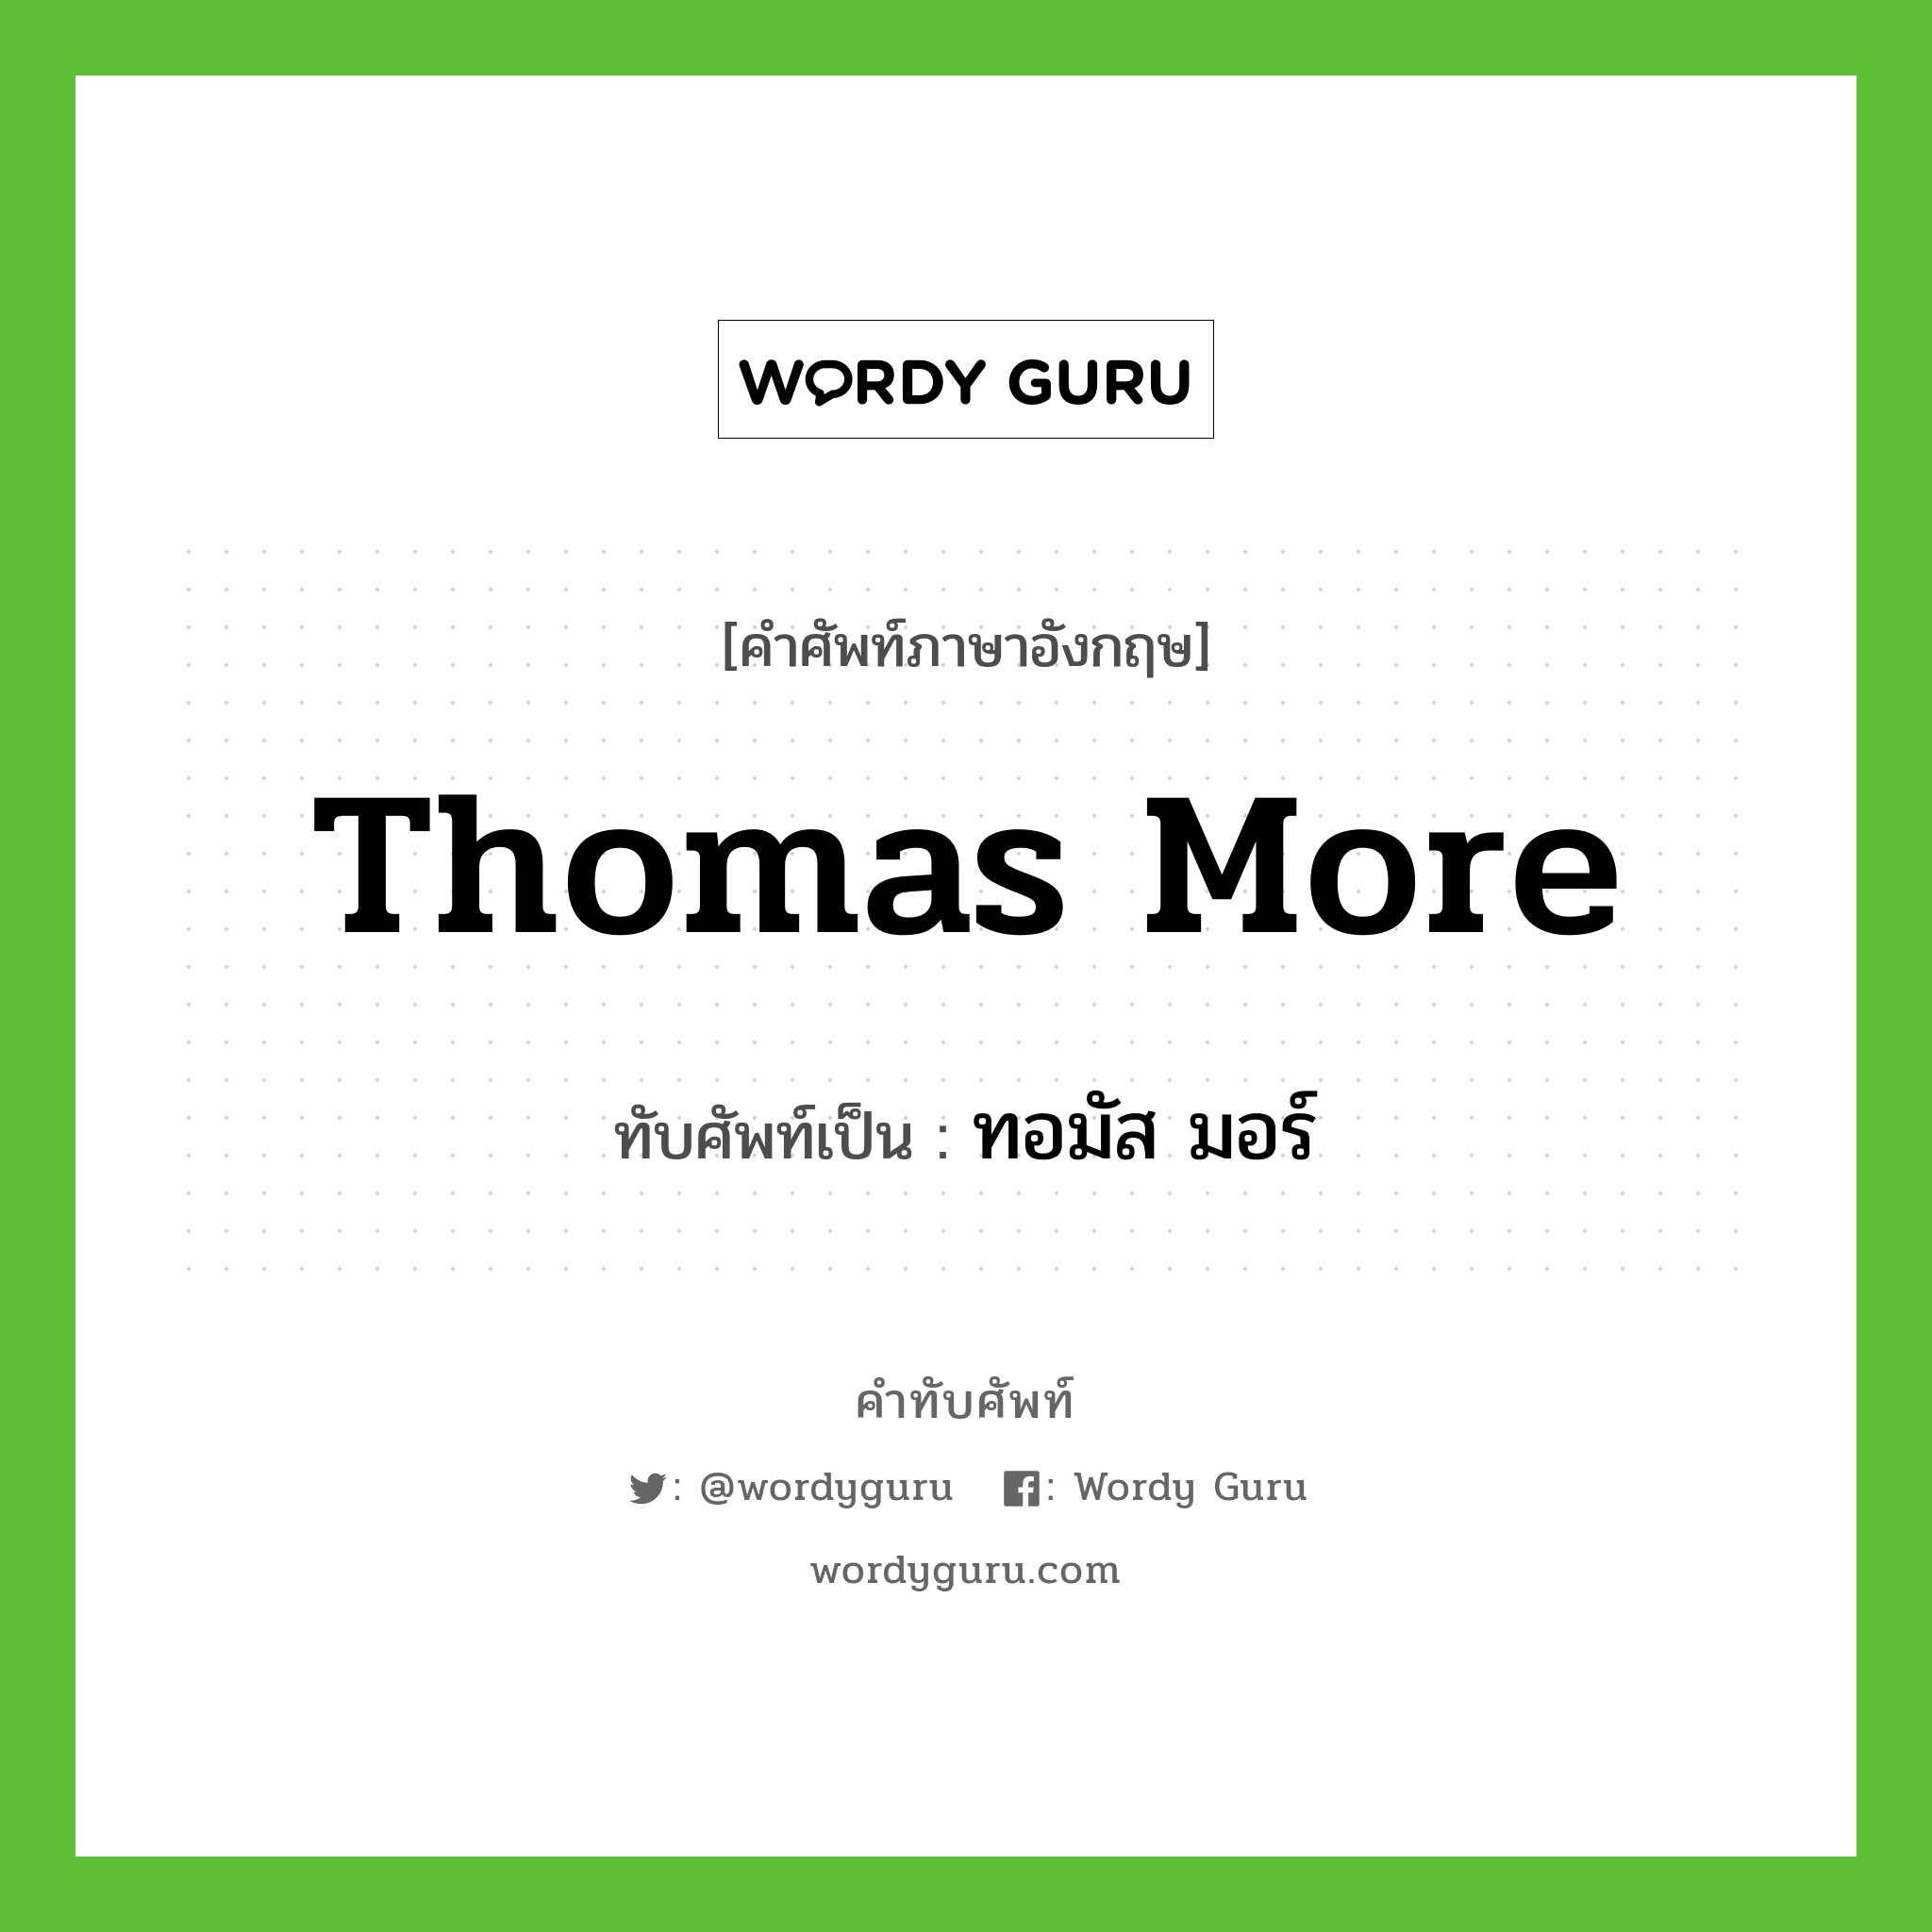 ทอมัส มอร์ เขียนอย่างไร?, คำศัพท์ภาษาอังกฤษ ทอมัส มอร์ ทับศัพท์เป็น Thomas More